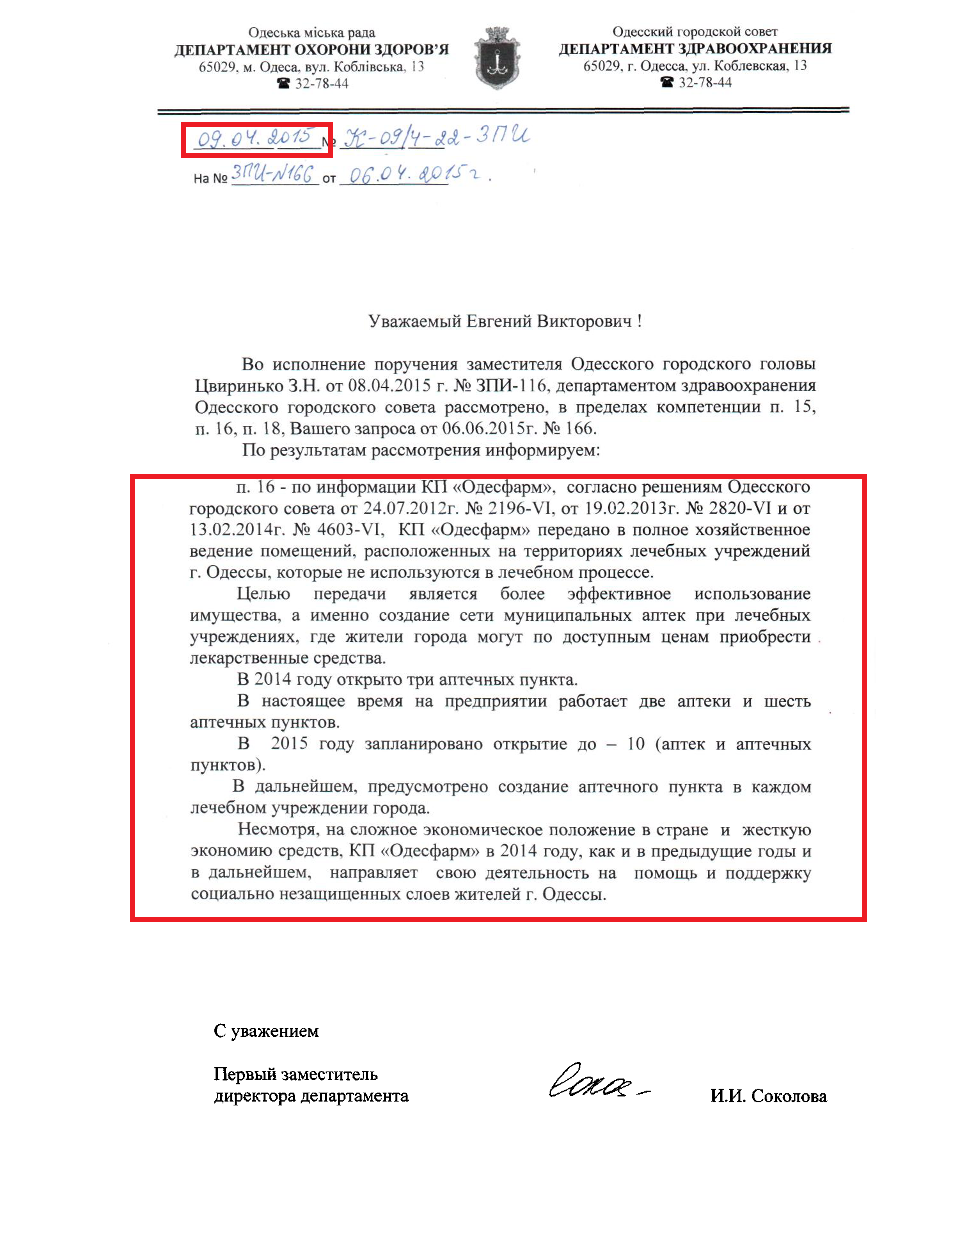 Лист першого заступника директора департменту І.І.Соколова